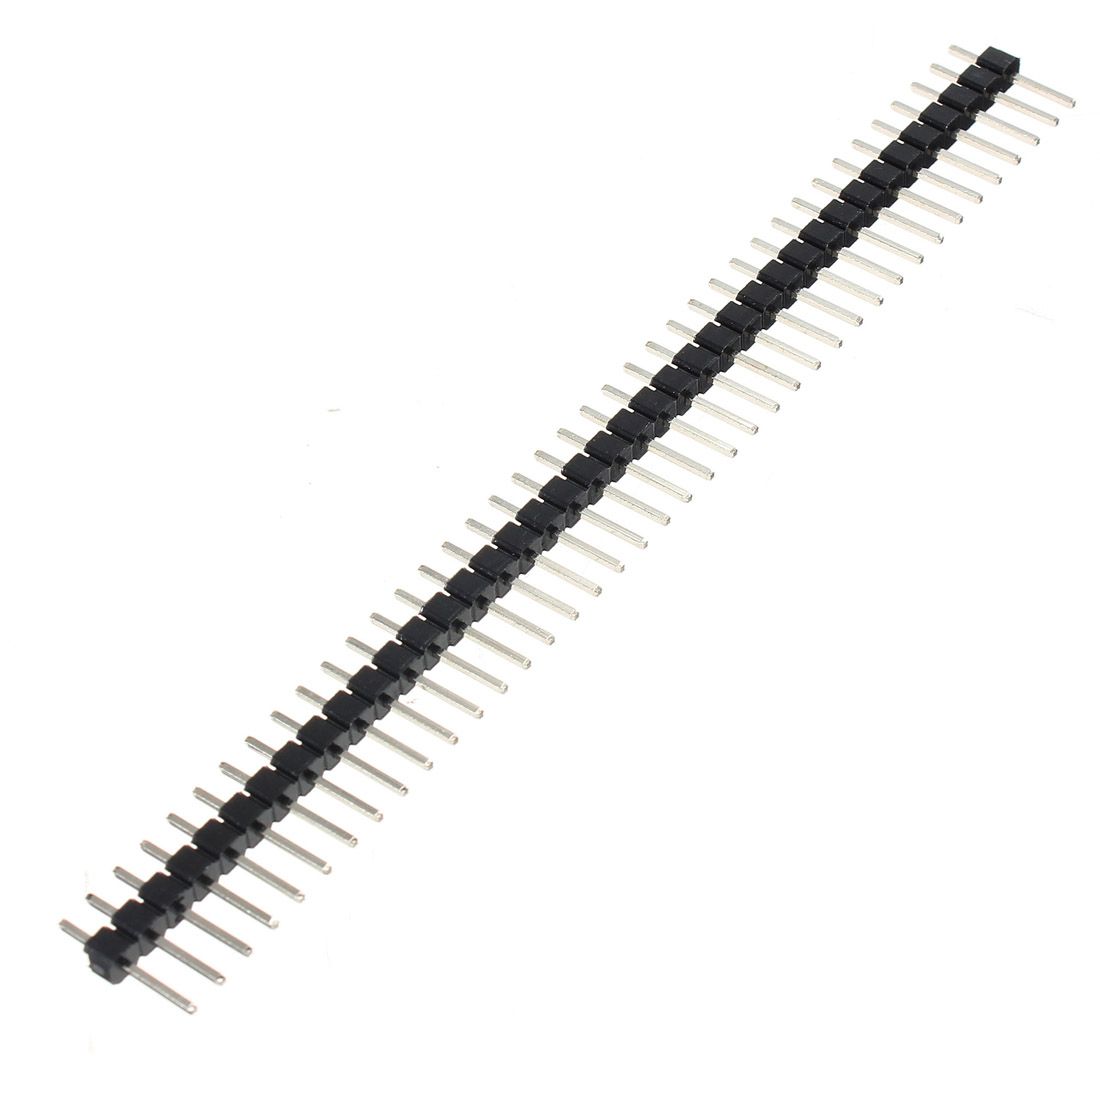 Pin header 1x40 pin 2.54mm pitch 11mm zwart